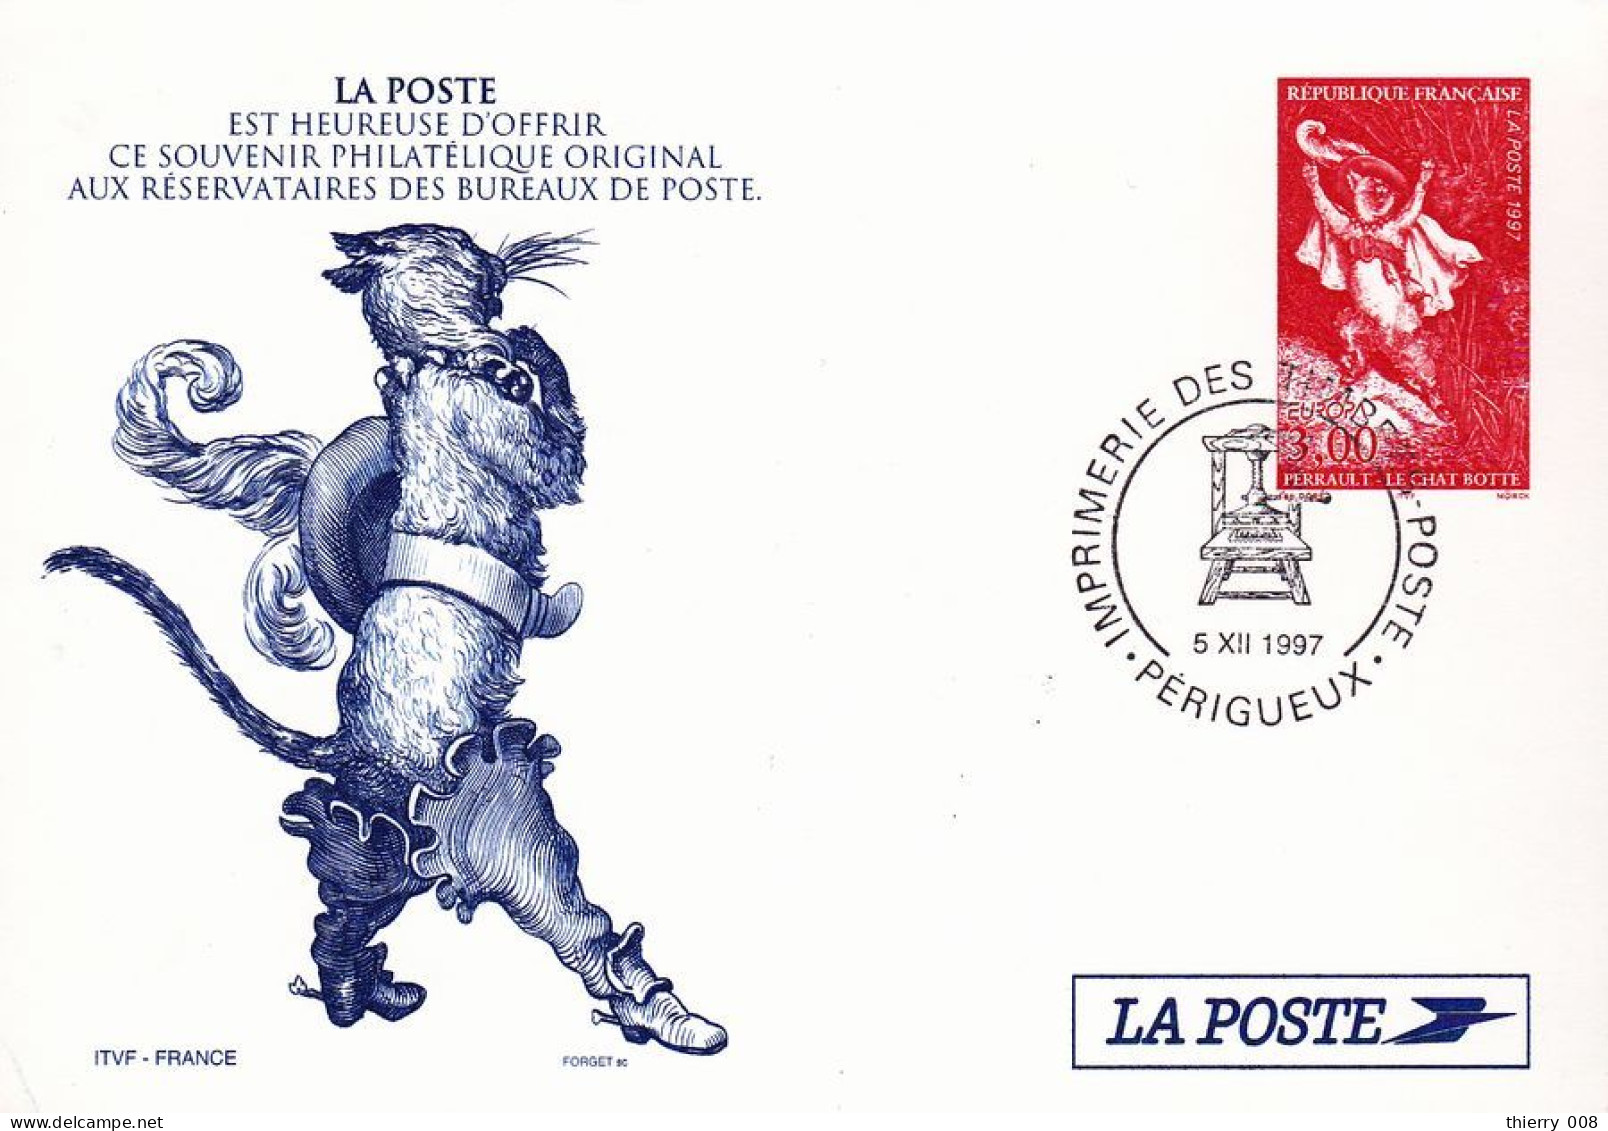 03 Pseudo Entier / PAP Le Chat Botté Perrault 5 12 1997 - Official Stationery